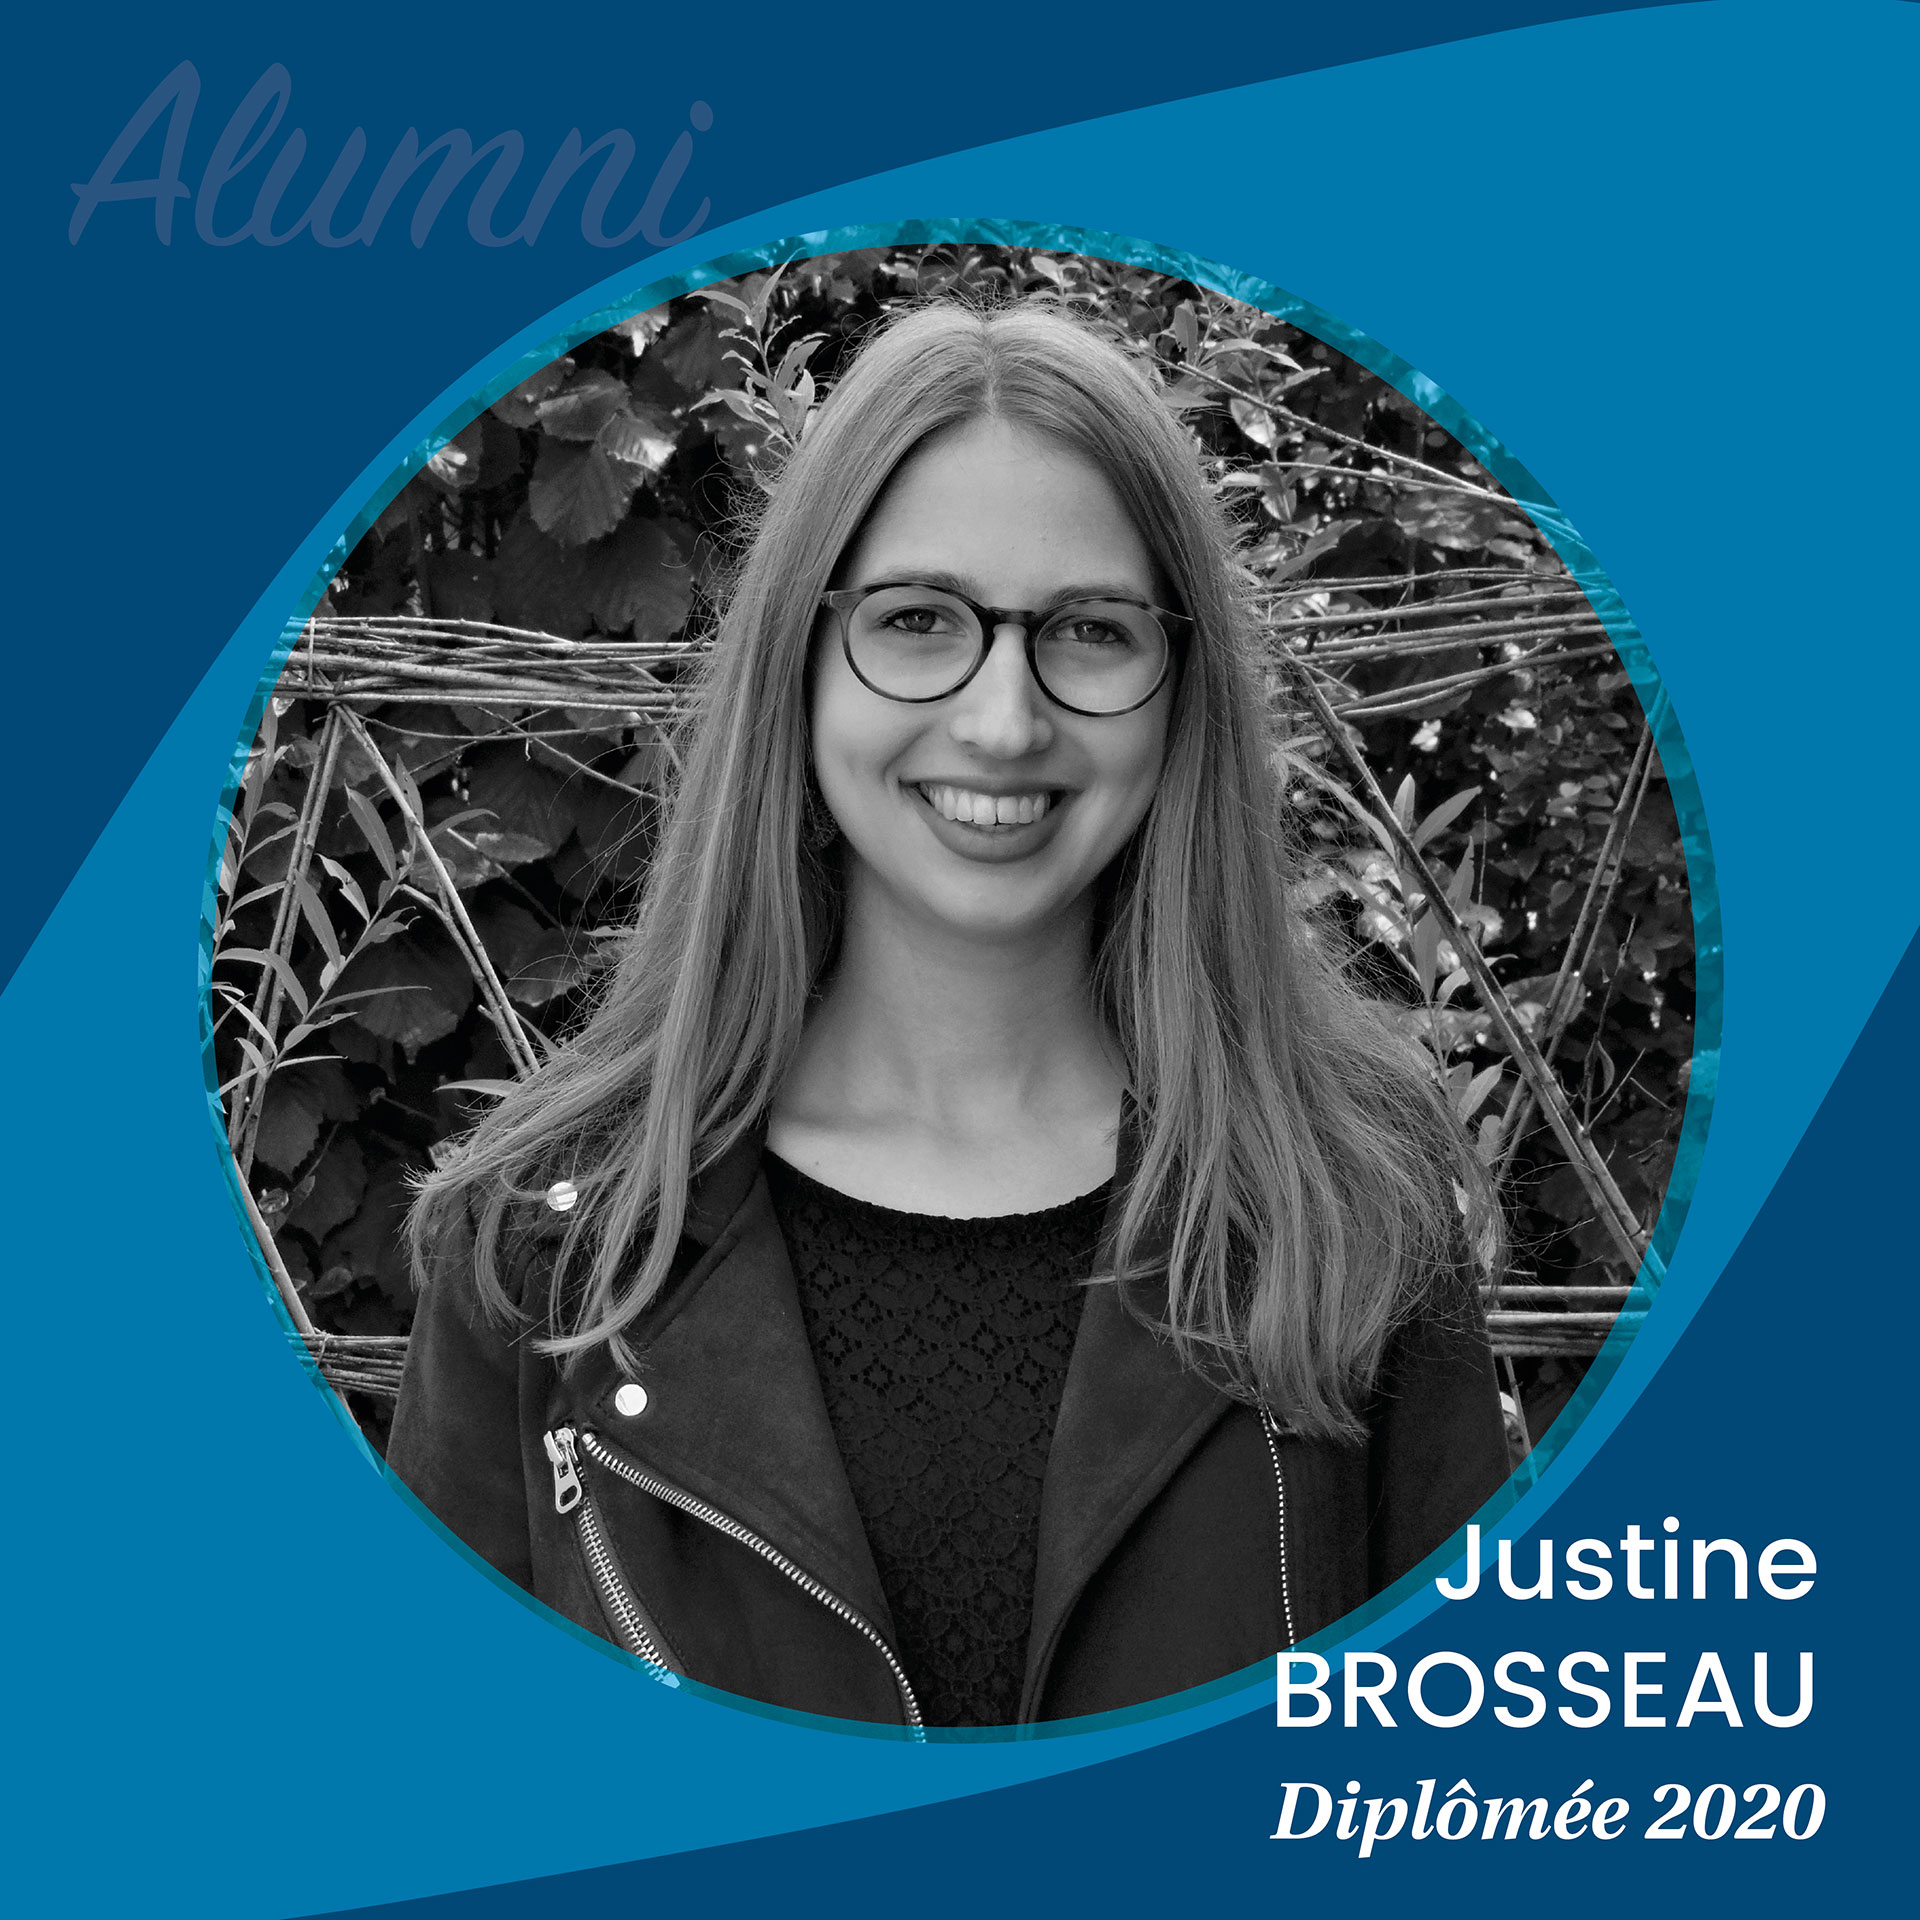 Justine Brosseau